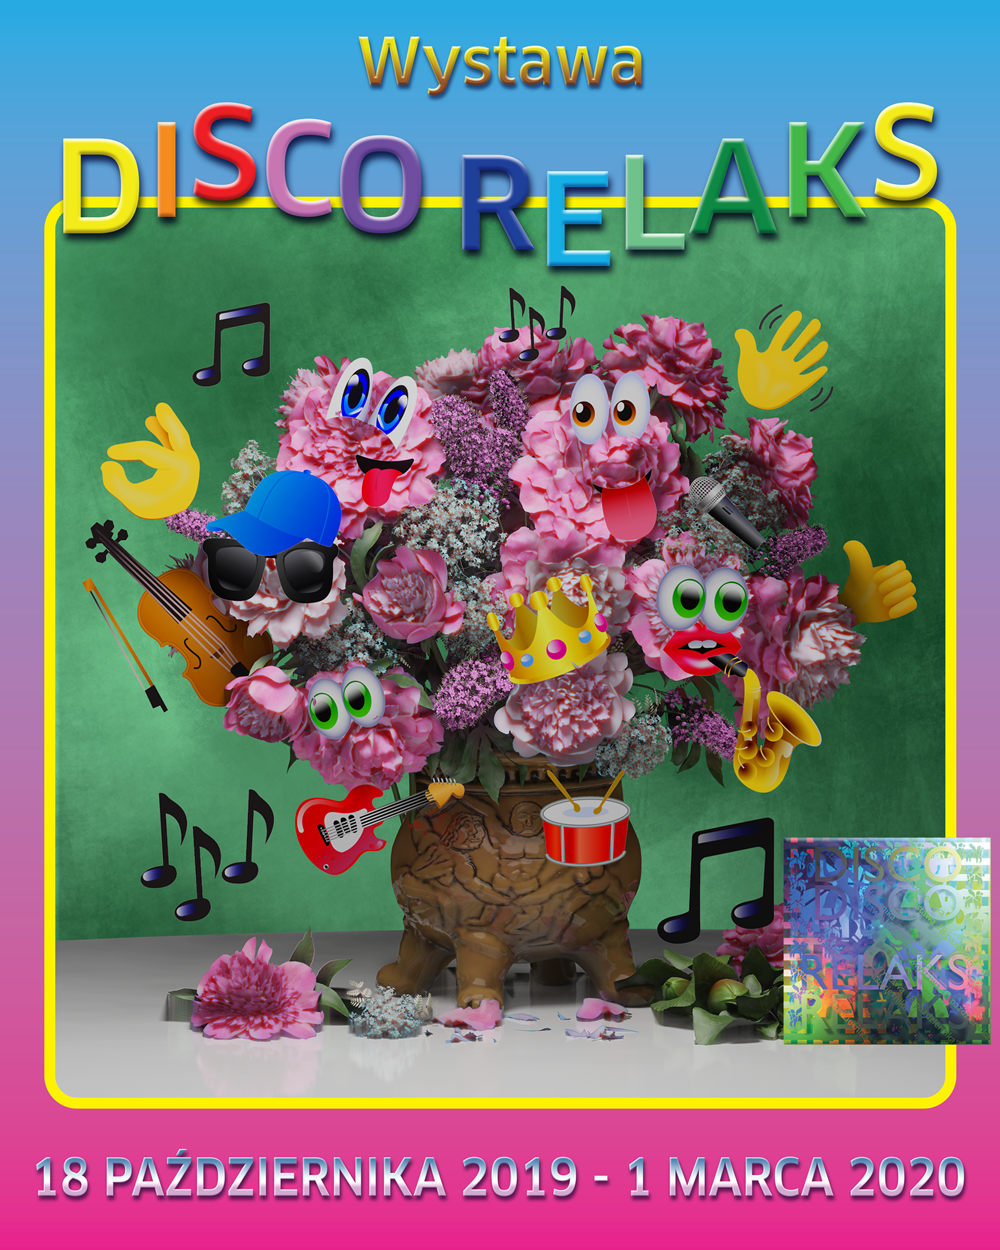 Disco Relaks - wystawa o kulturowym fenomenie disco polo